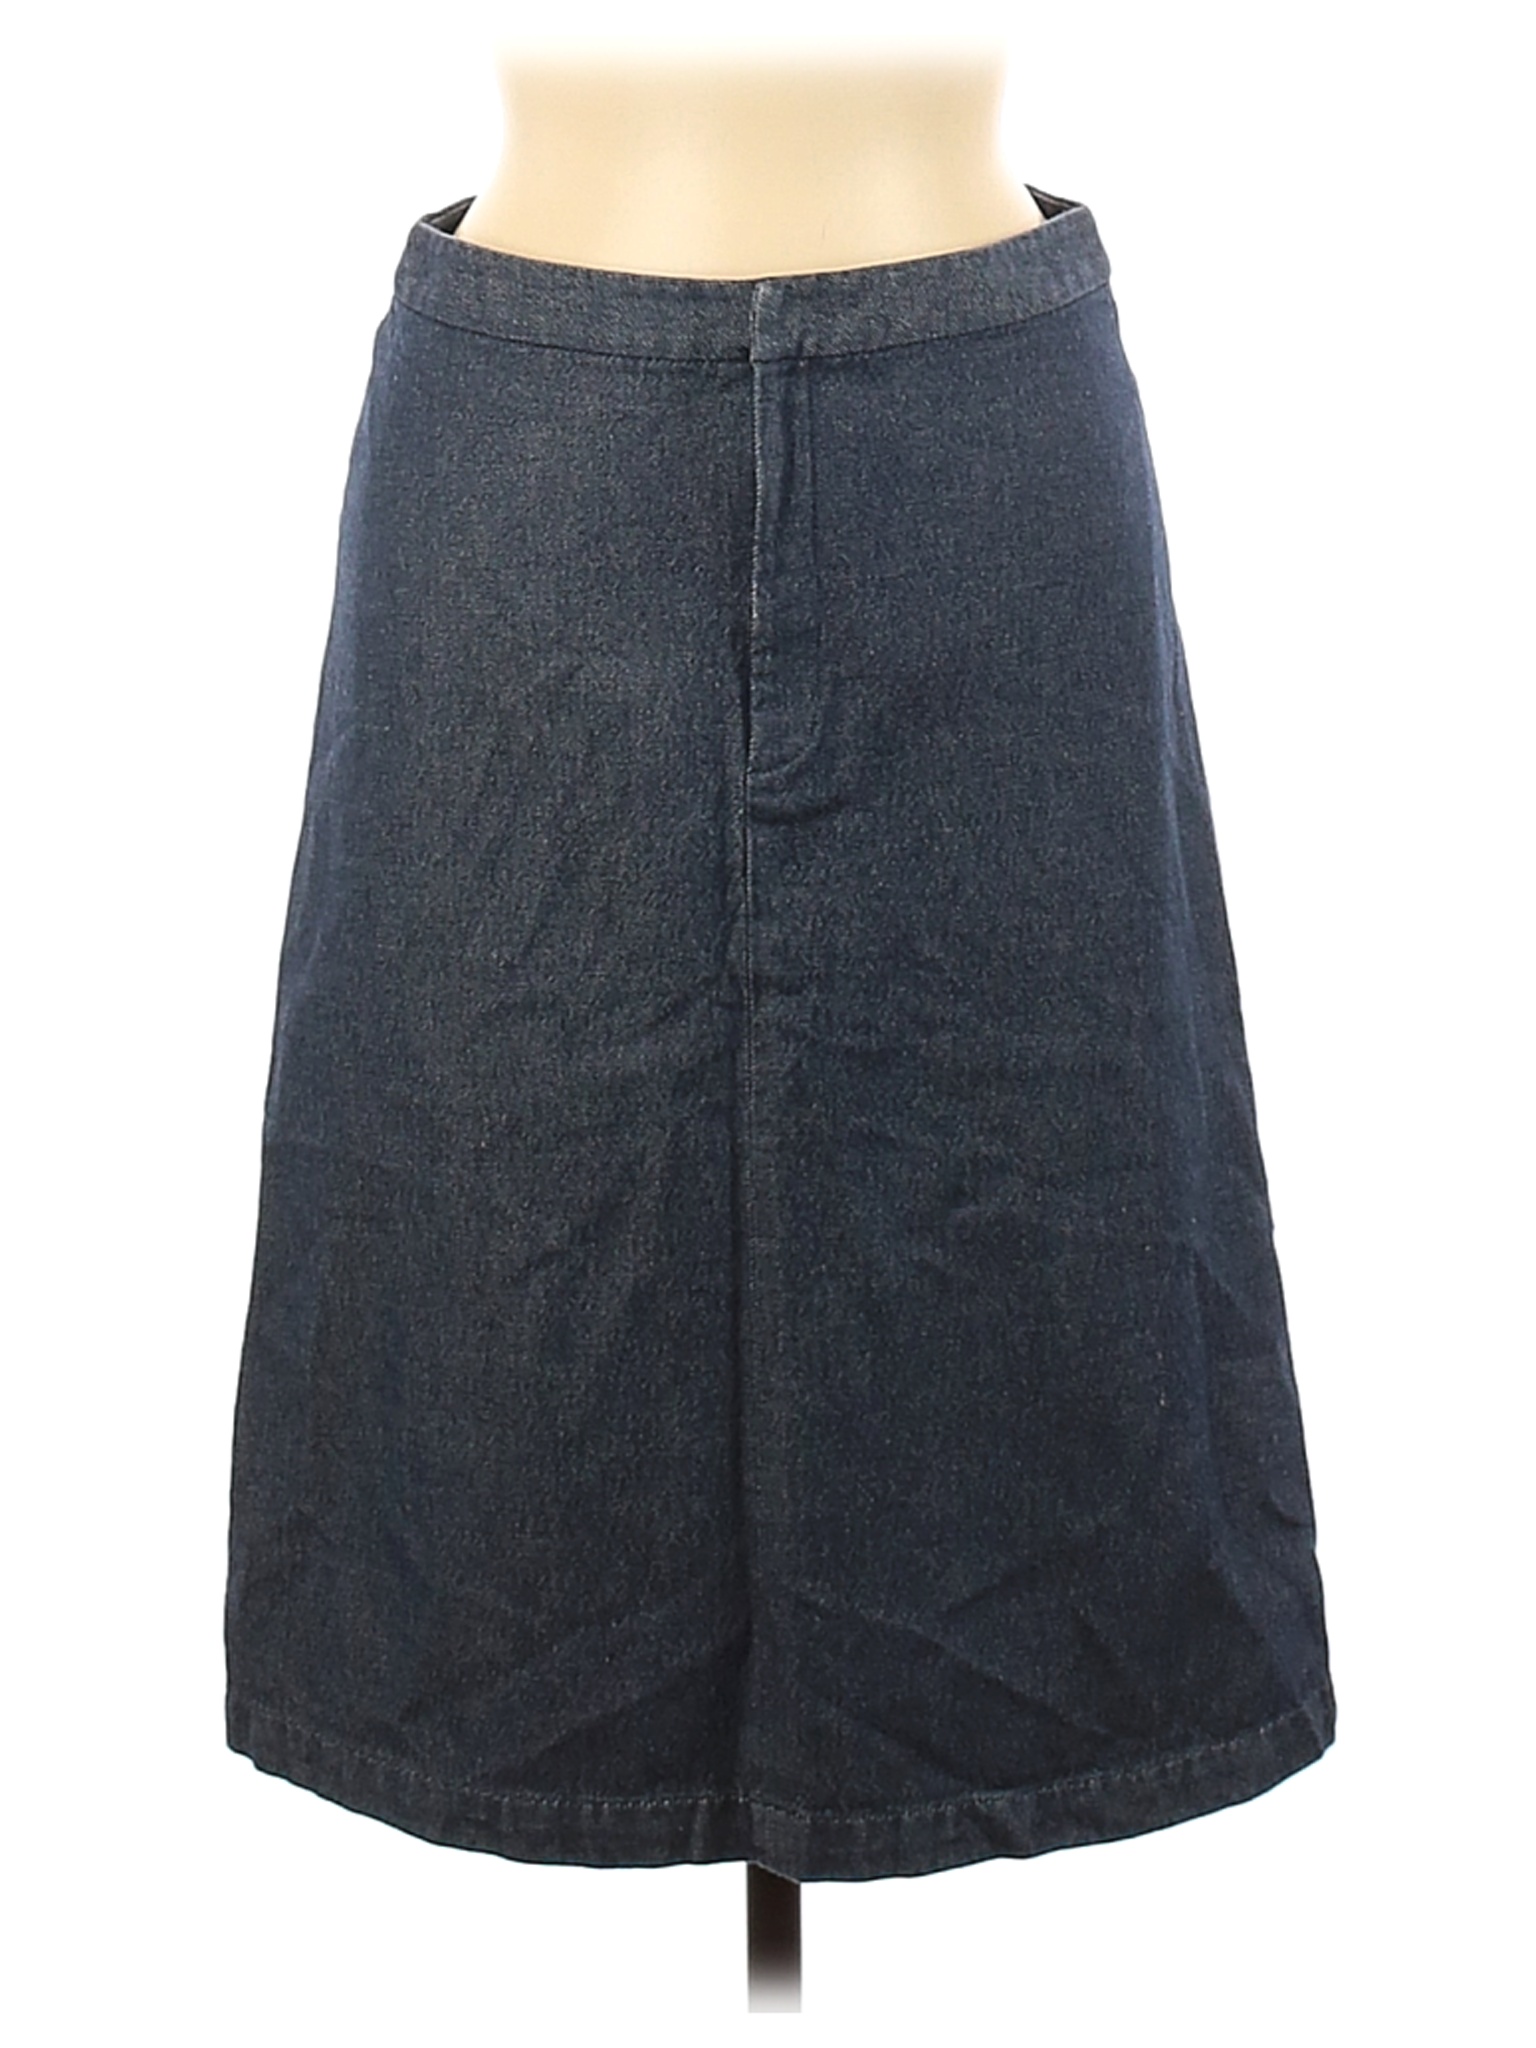 Banana Republic Women Blue Denim Skirt 6 | eBay